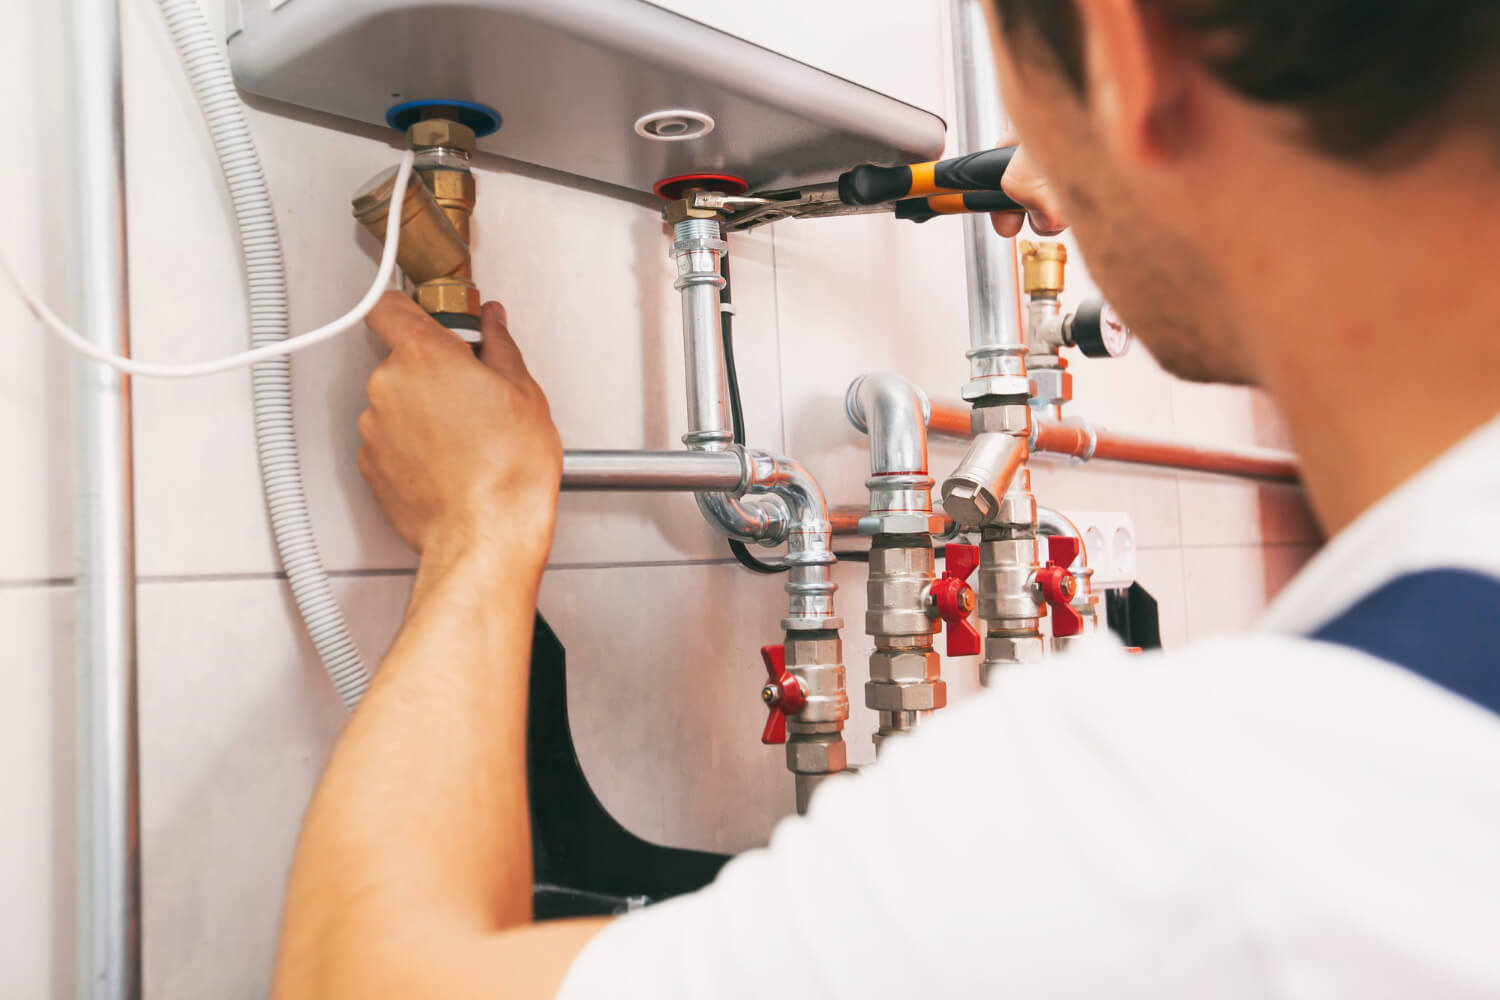 plumber-screwing-nut-pipe-heating-system-boiler-room